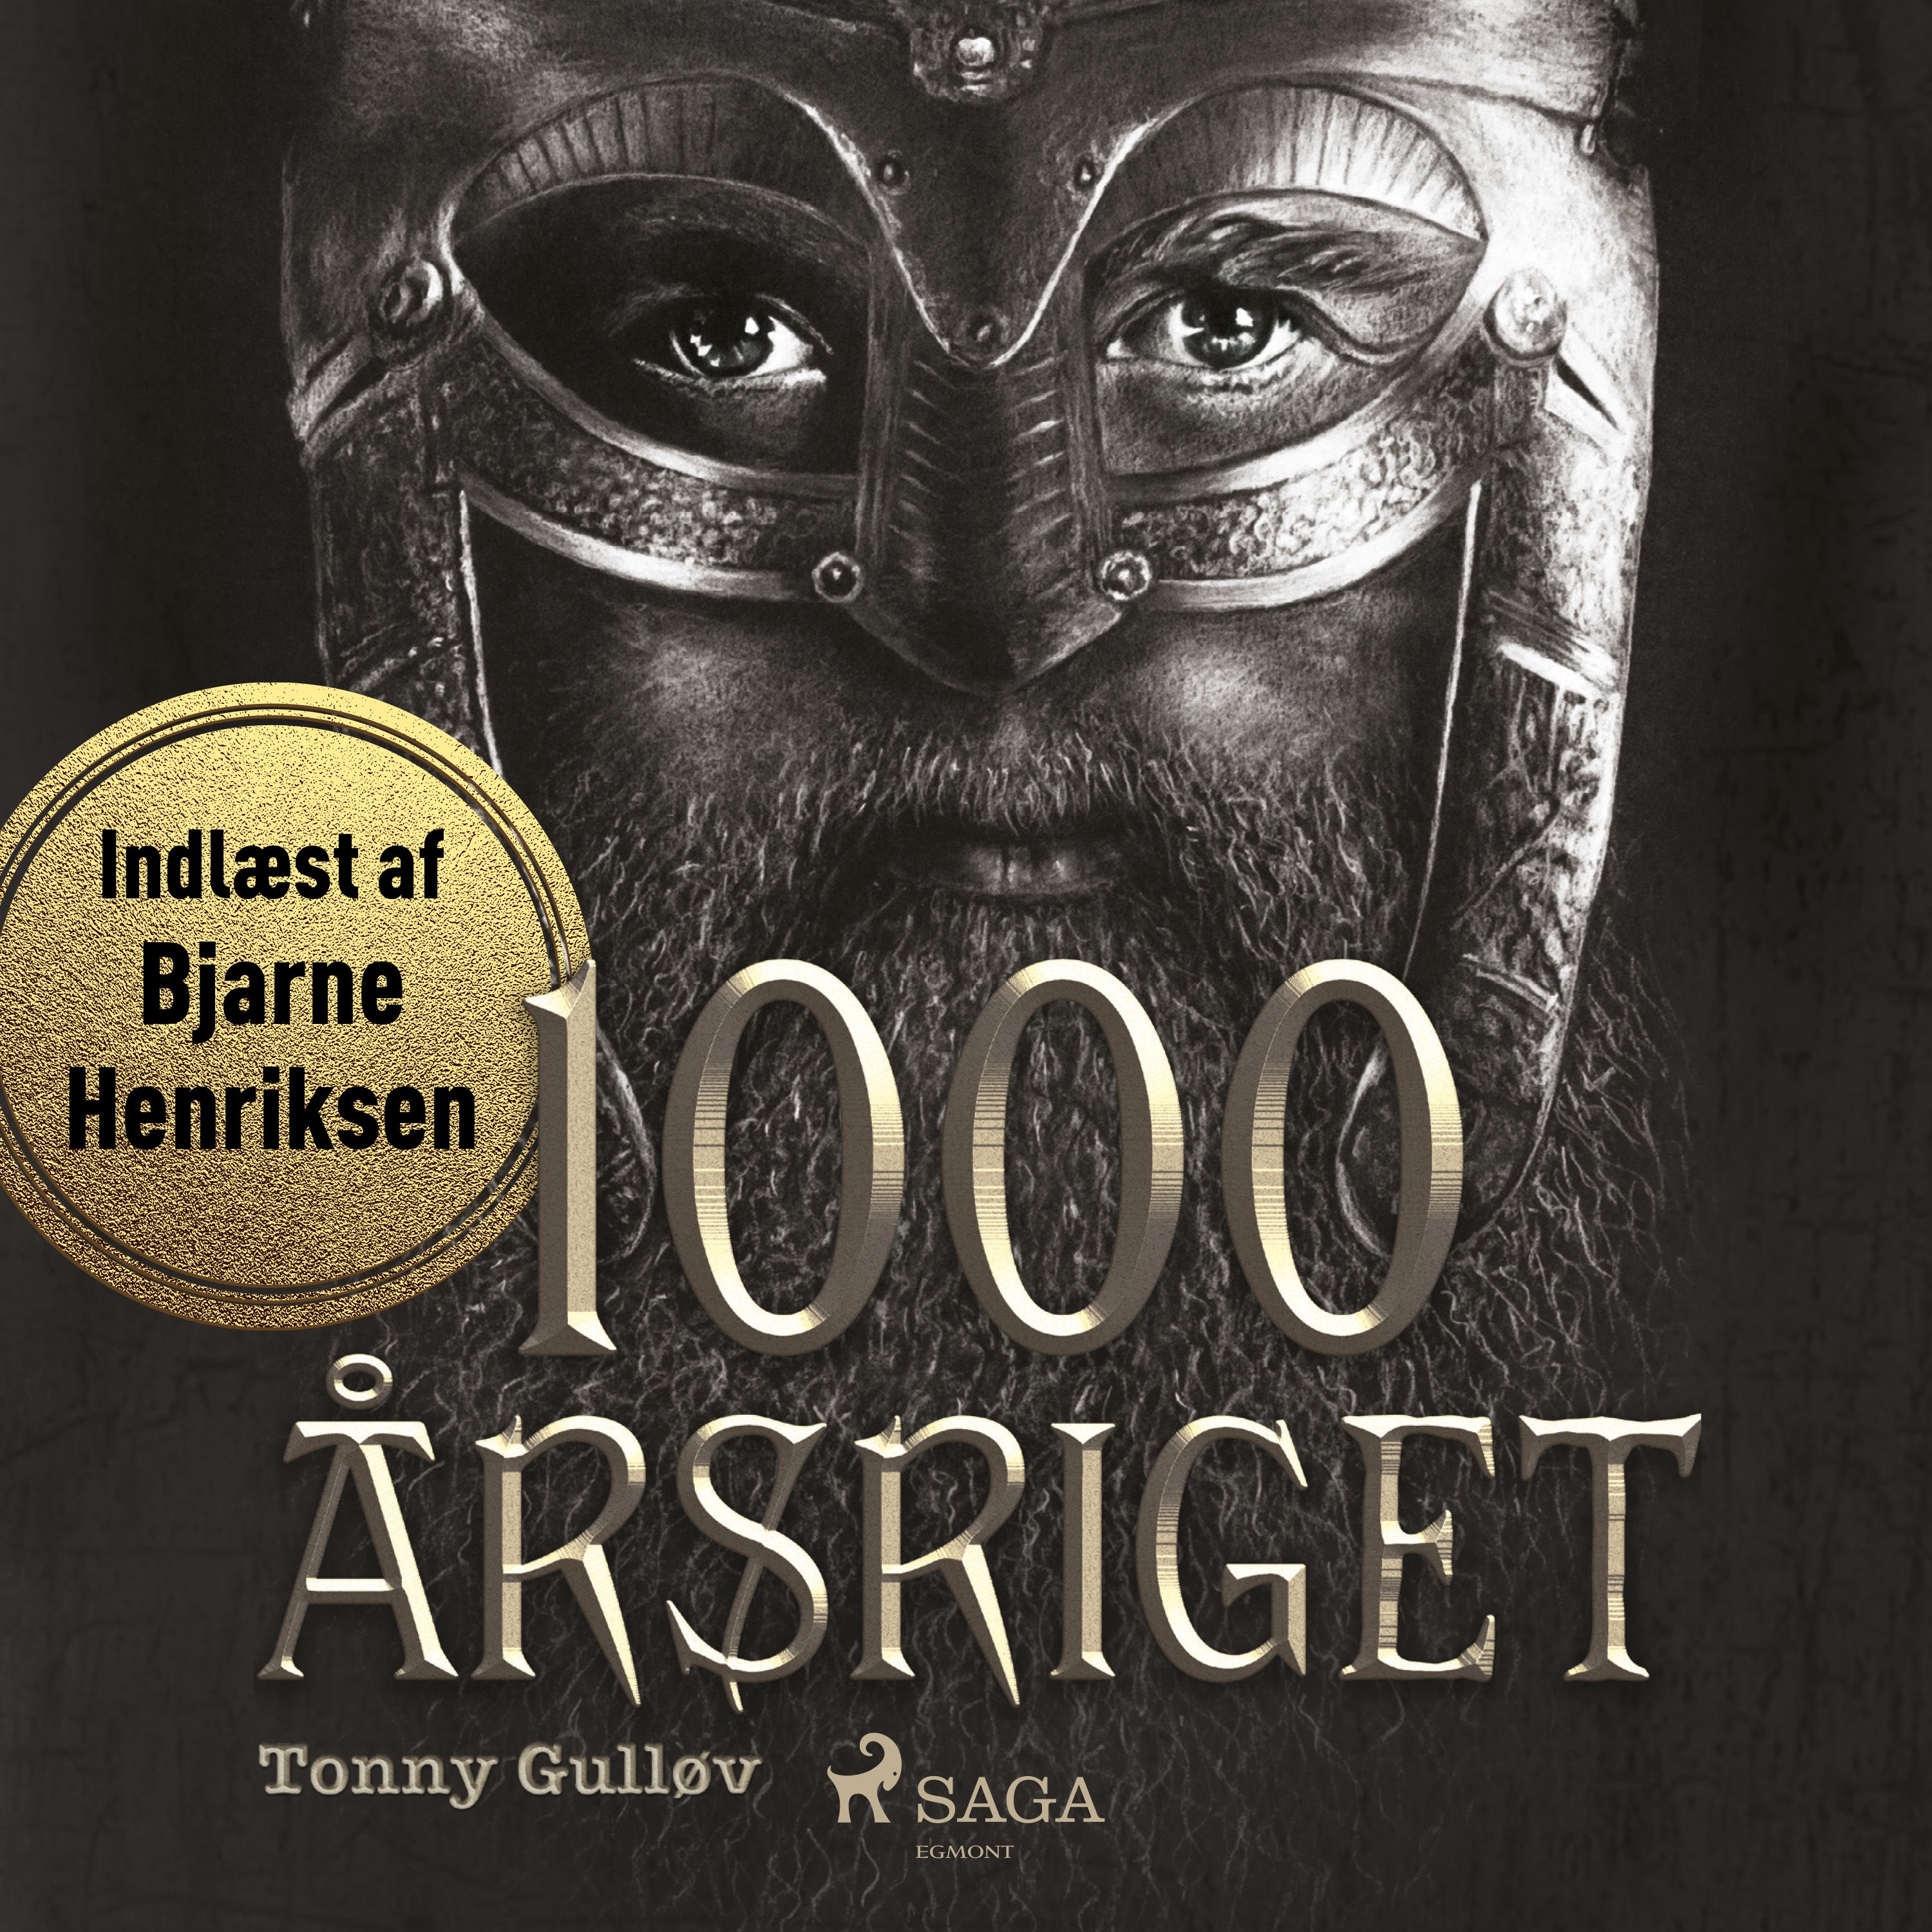 1000-årsriget, ljudbok av Tonny Gulløv